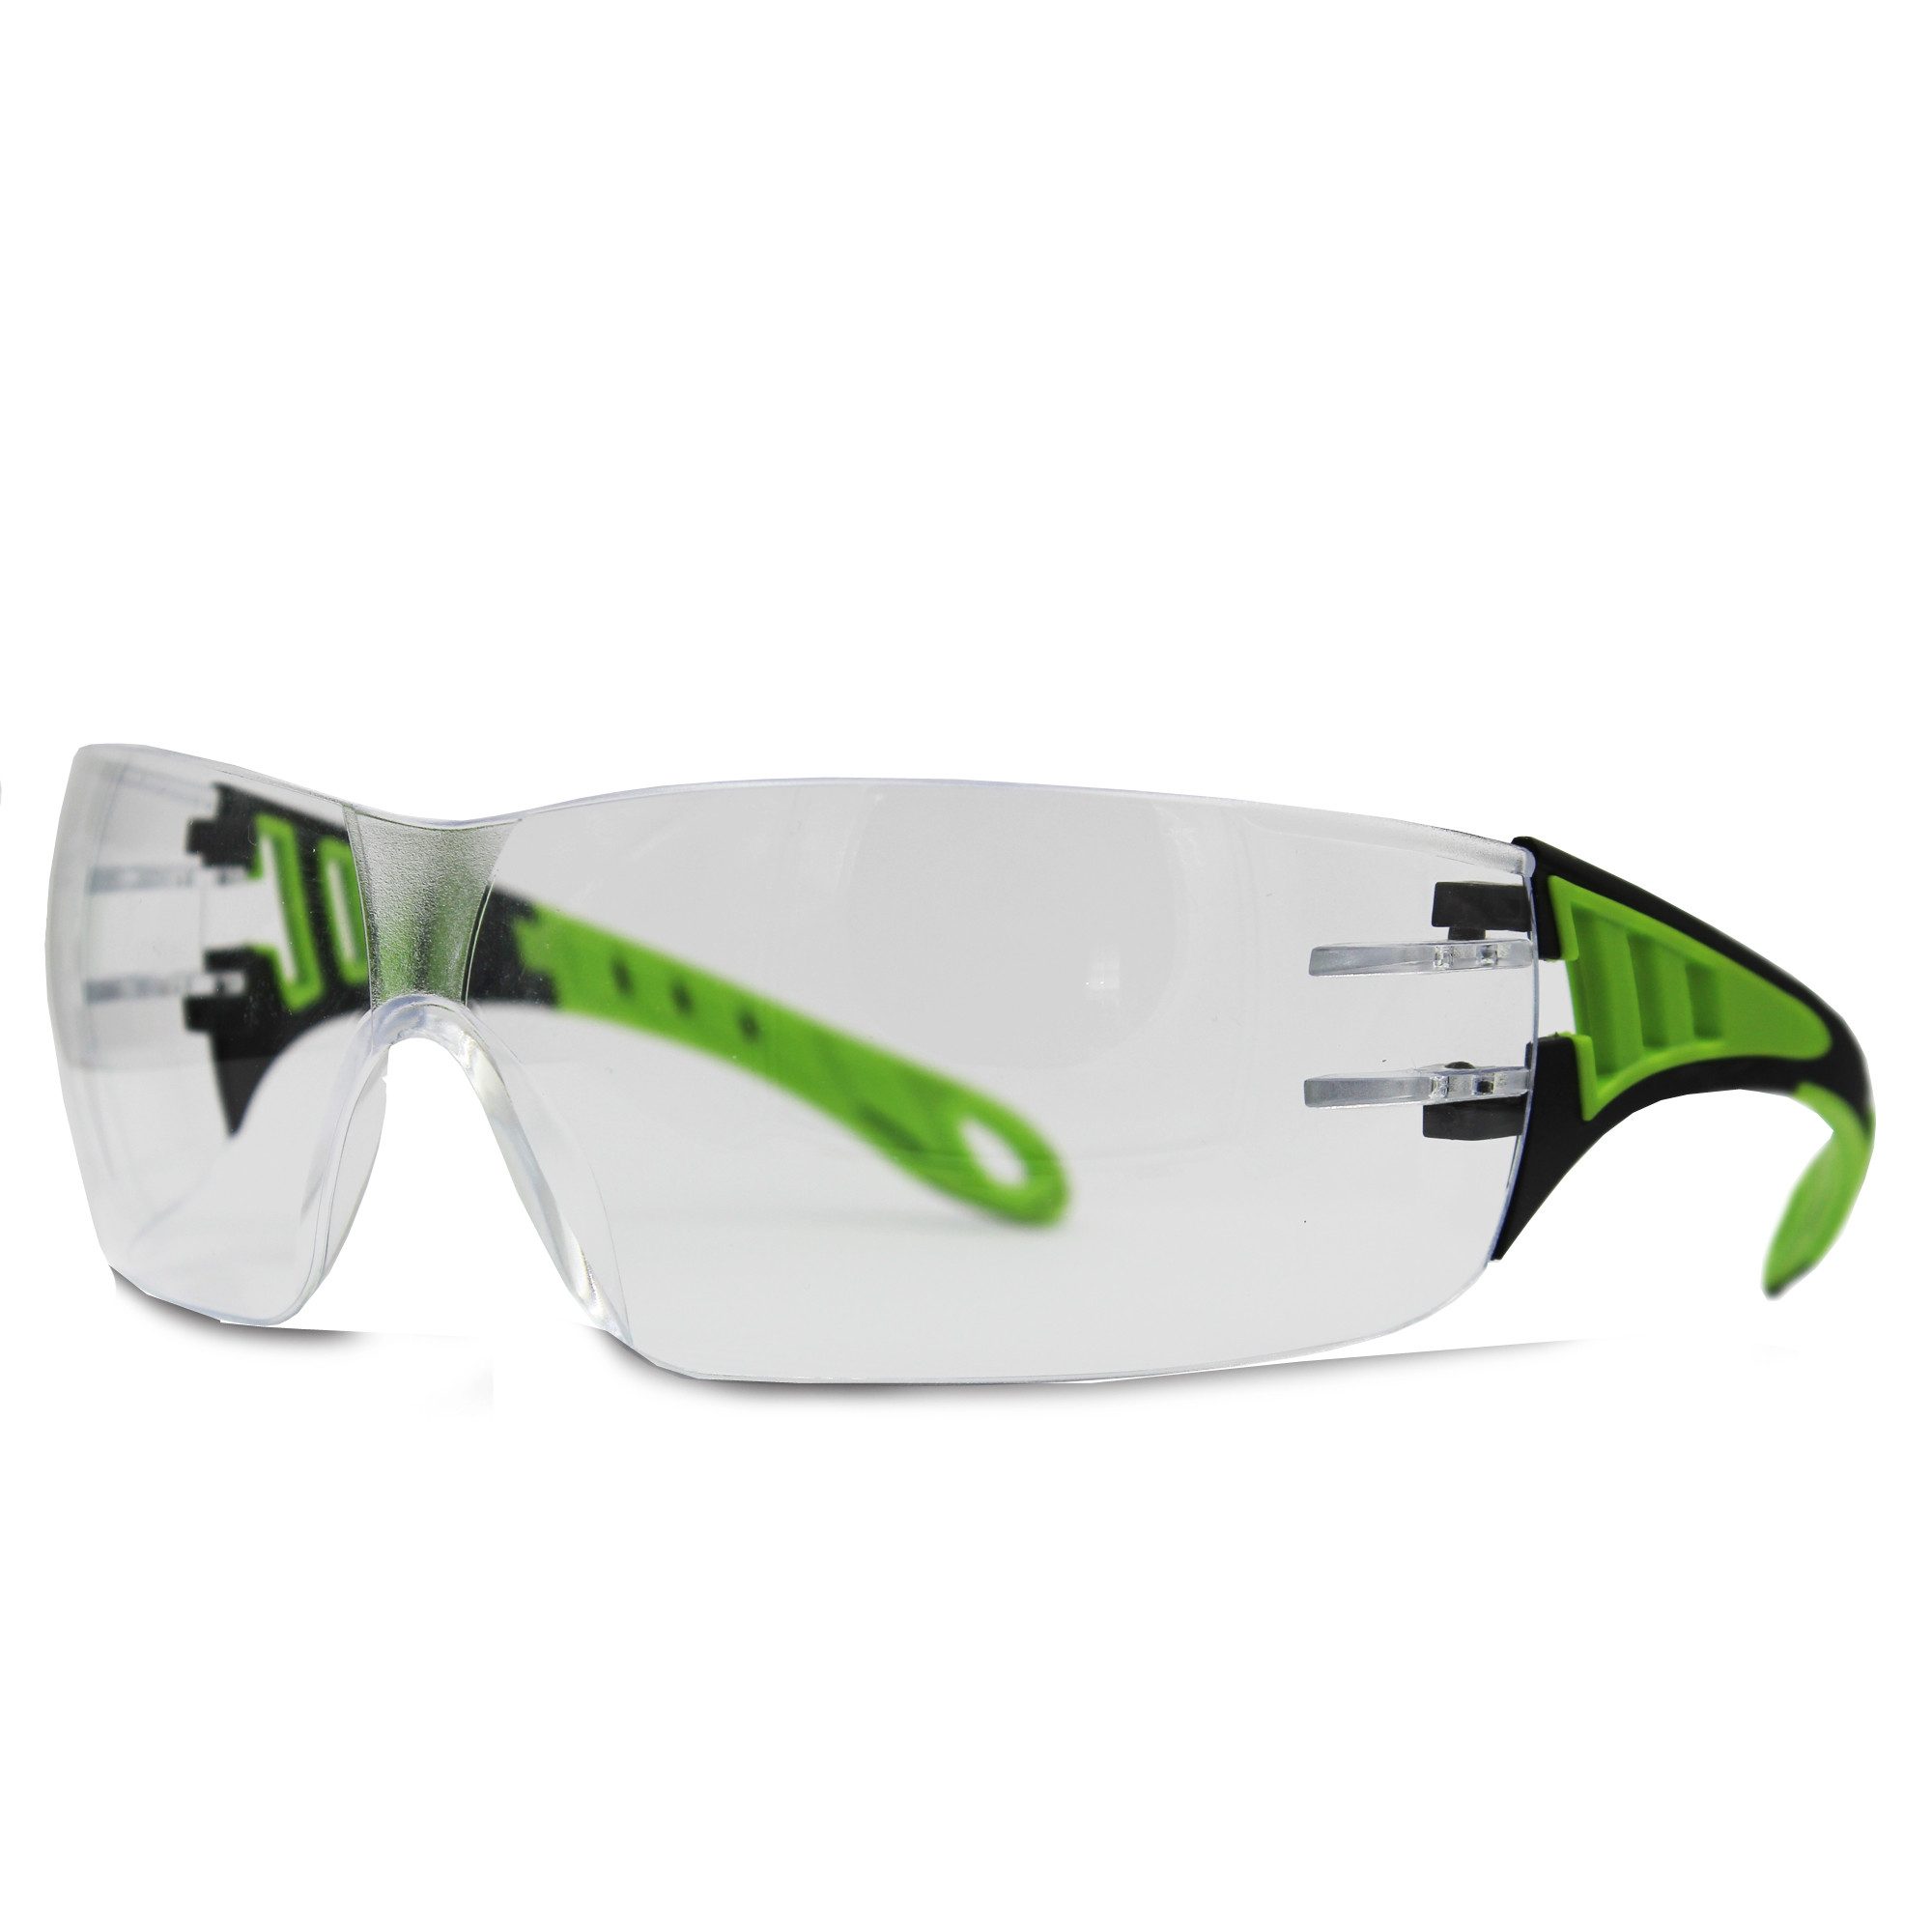 GUARD 5 Arbeitsschutzbrille PS12 - Schutzbrille mit UV-Filter, UV-Schutz-Filter